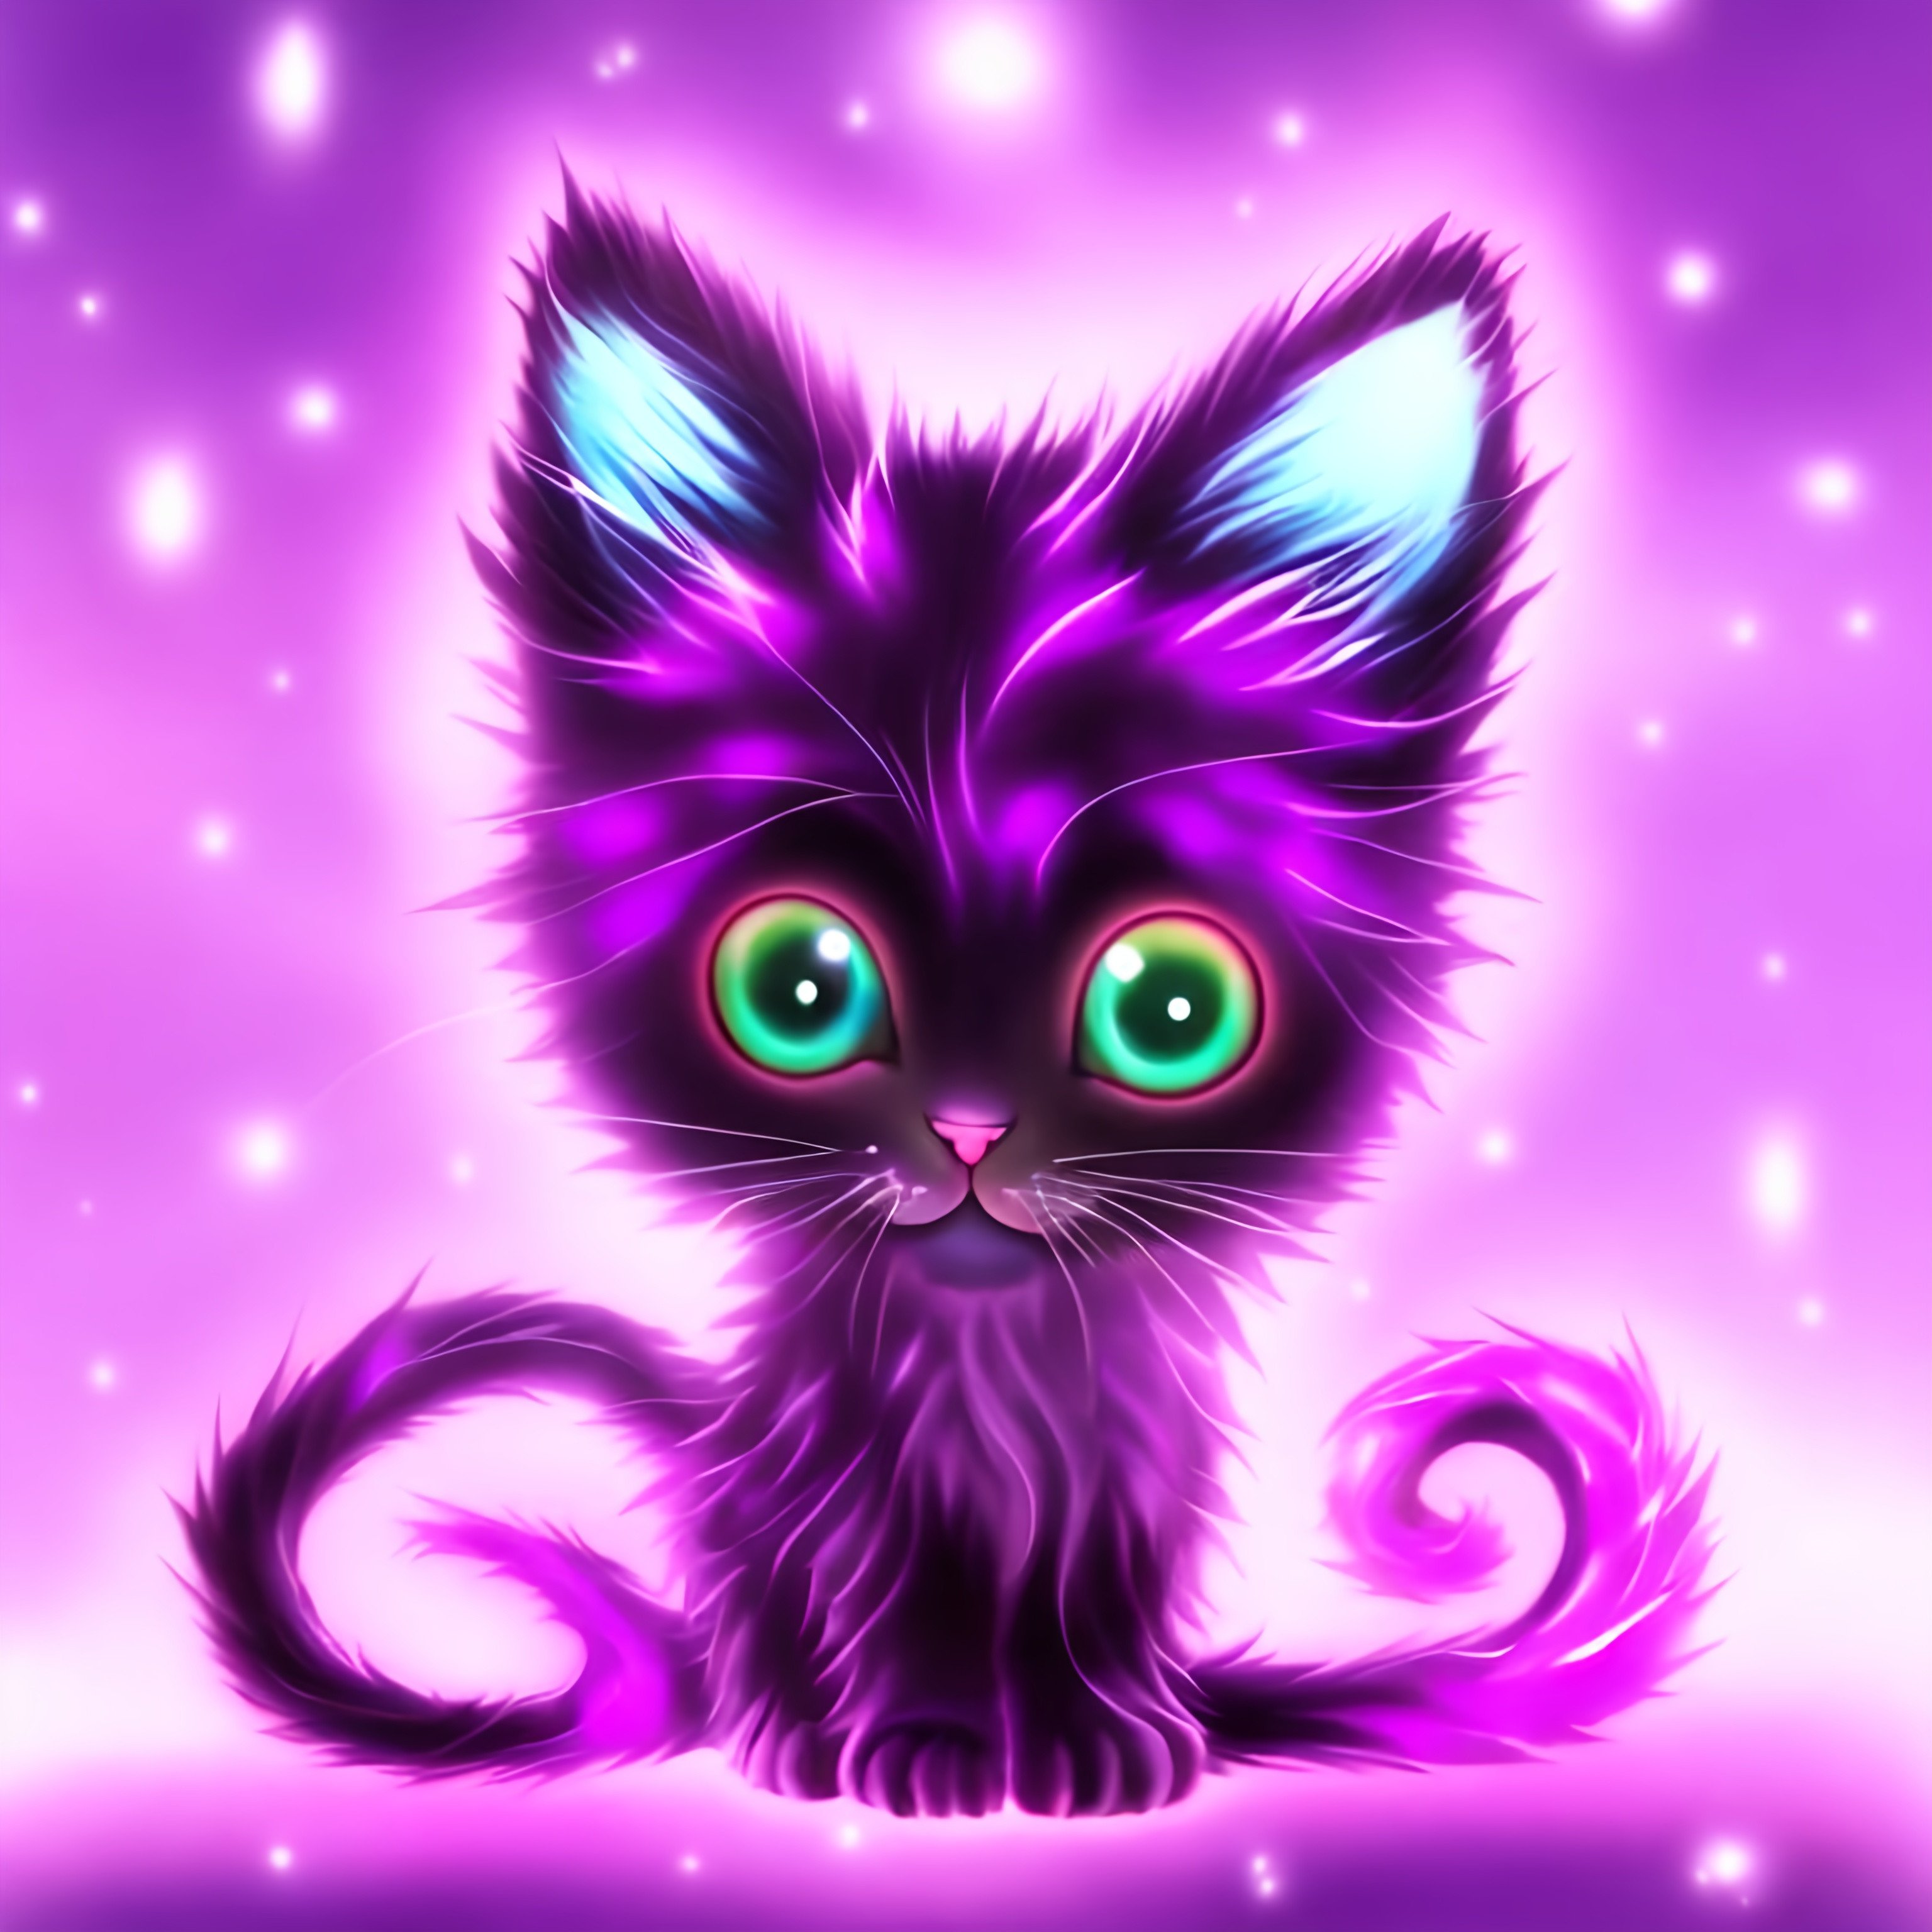 a glowing purple kitten anime | OpenArt